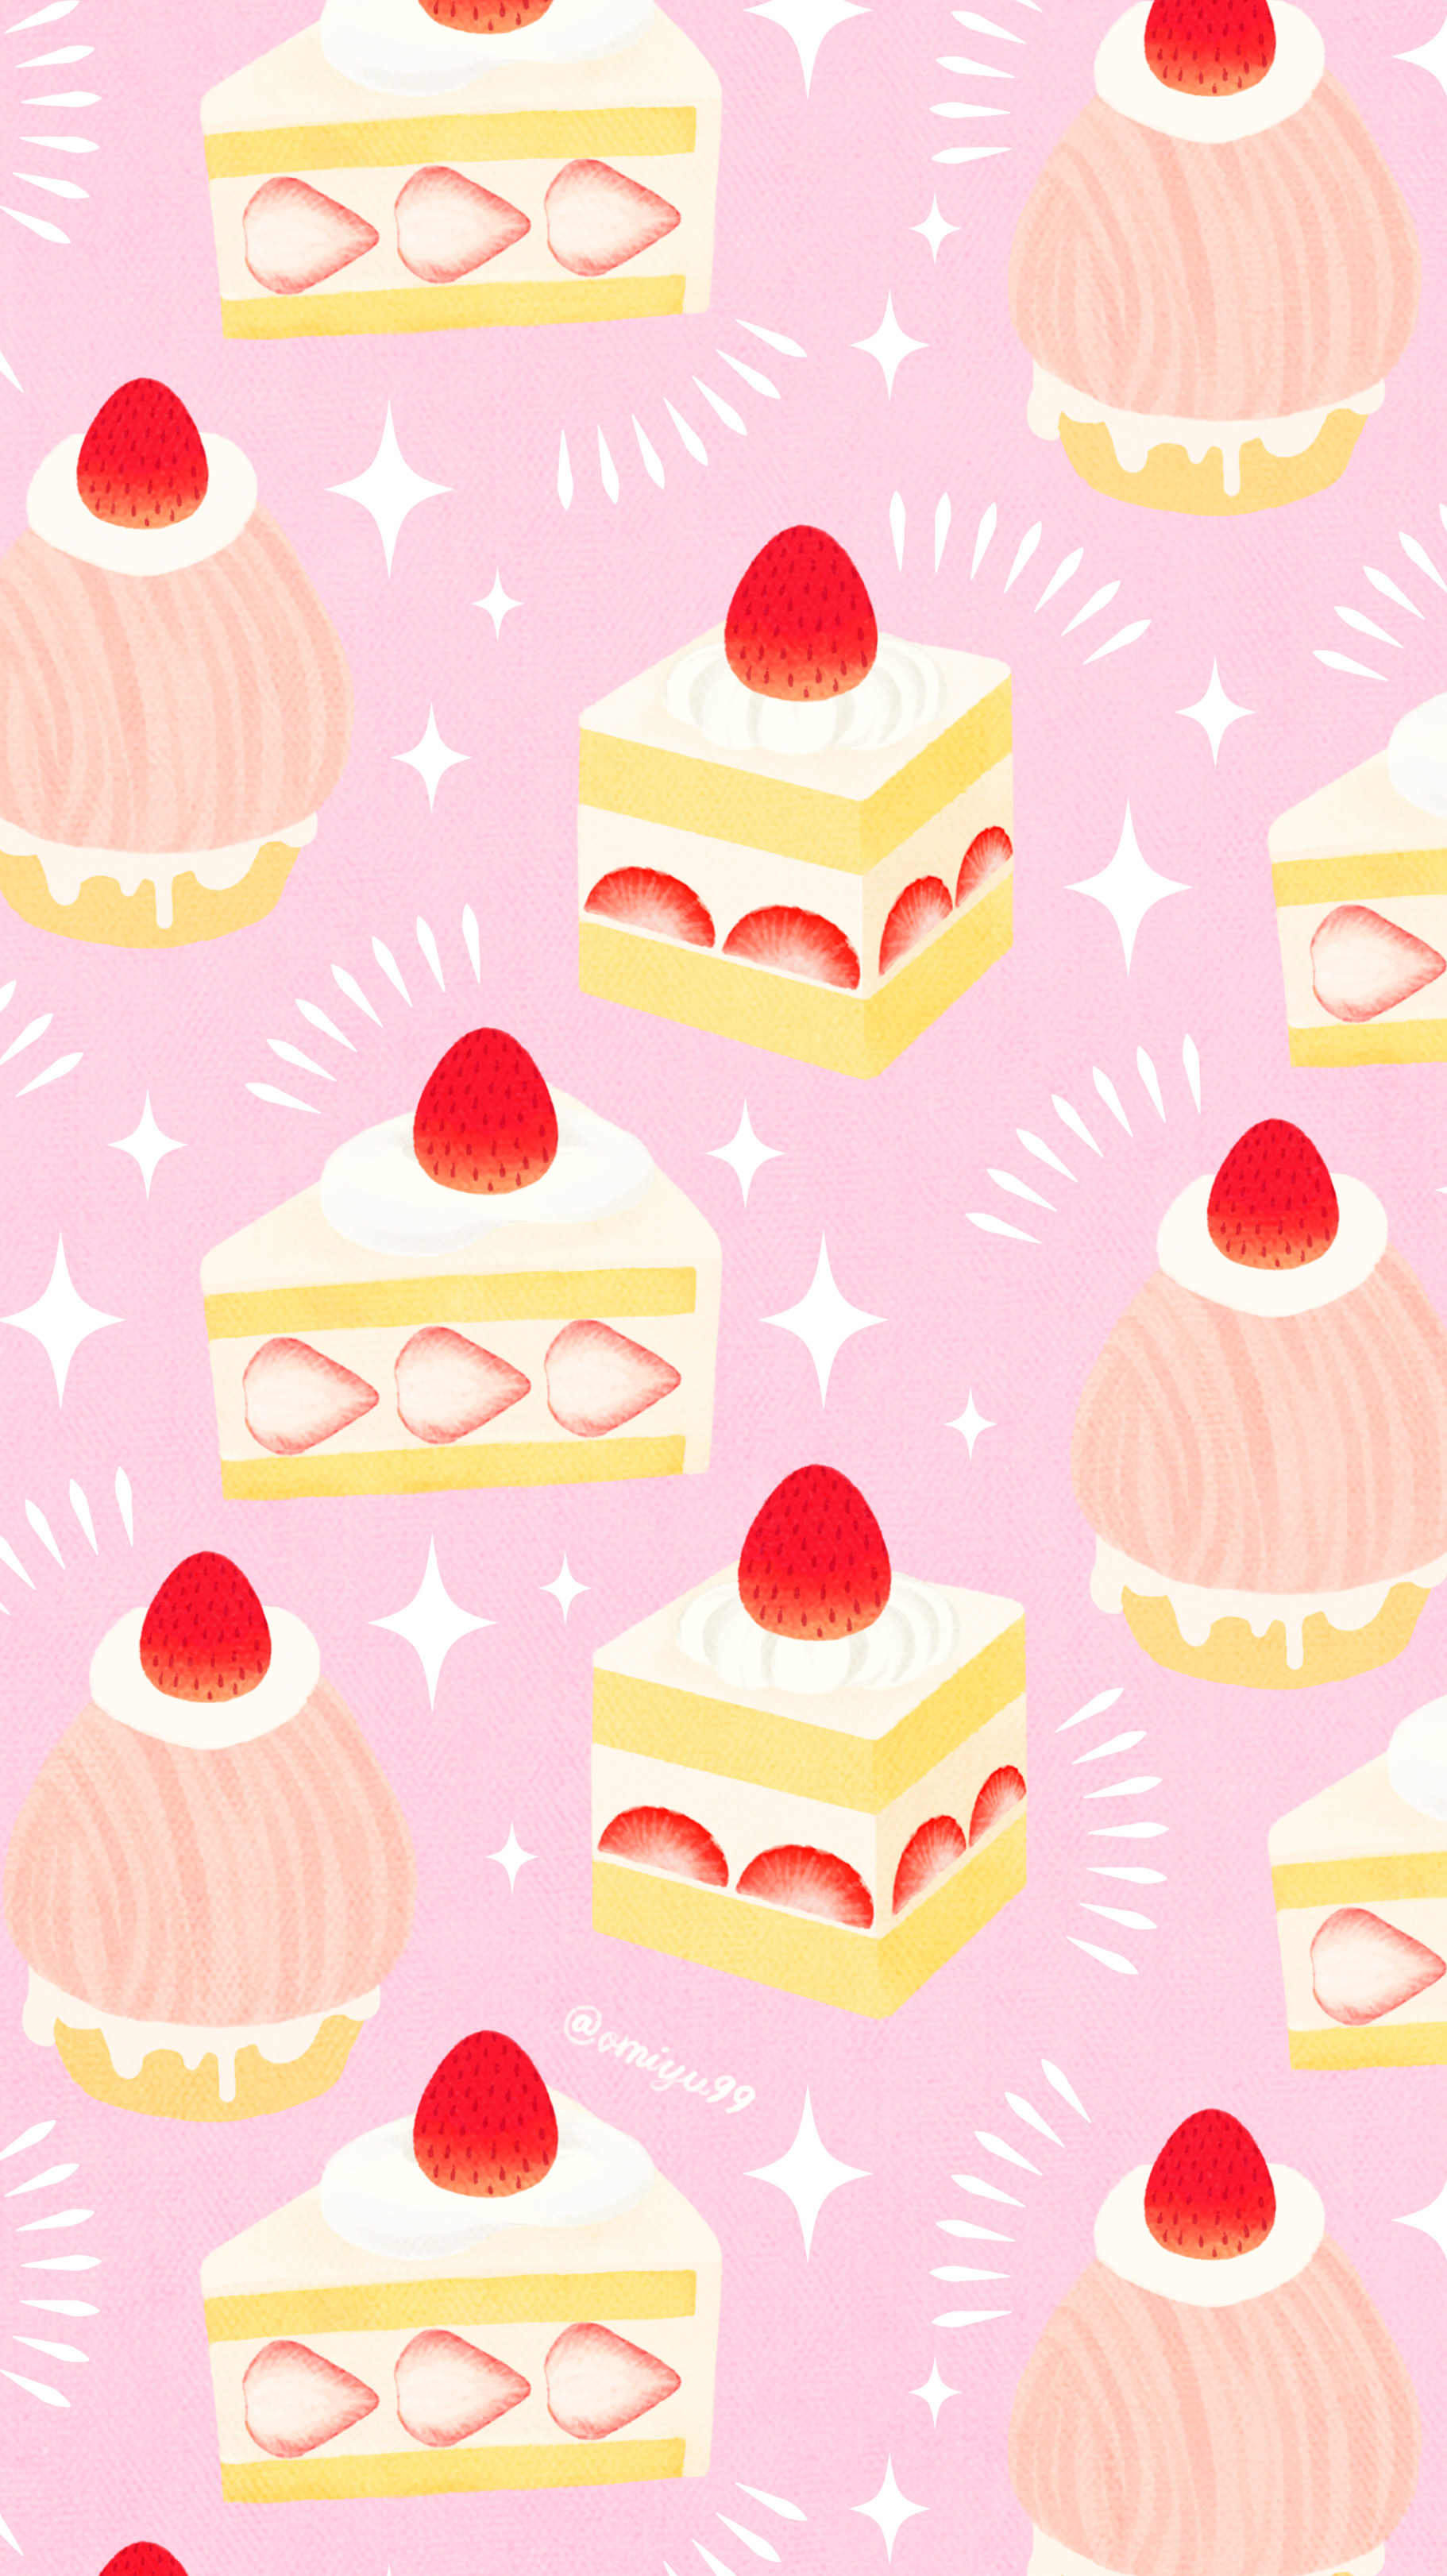 Omiyu いちごケーキな壁紙 Illust Illustration 壁紙 イラスト Iphone壁紙 ケーキ いちご 食べ物 Strawberry Cake T Co Qk9wl2wgqj Twitter